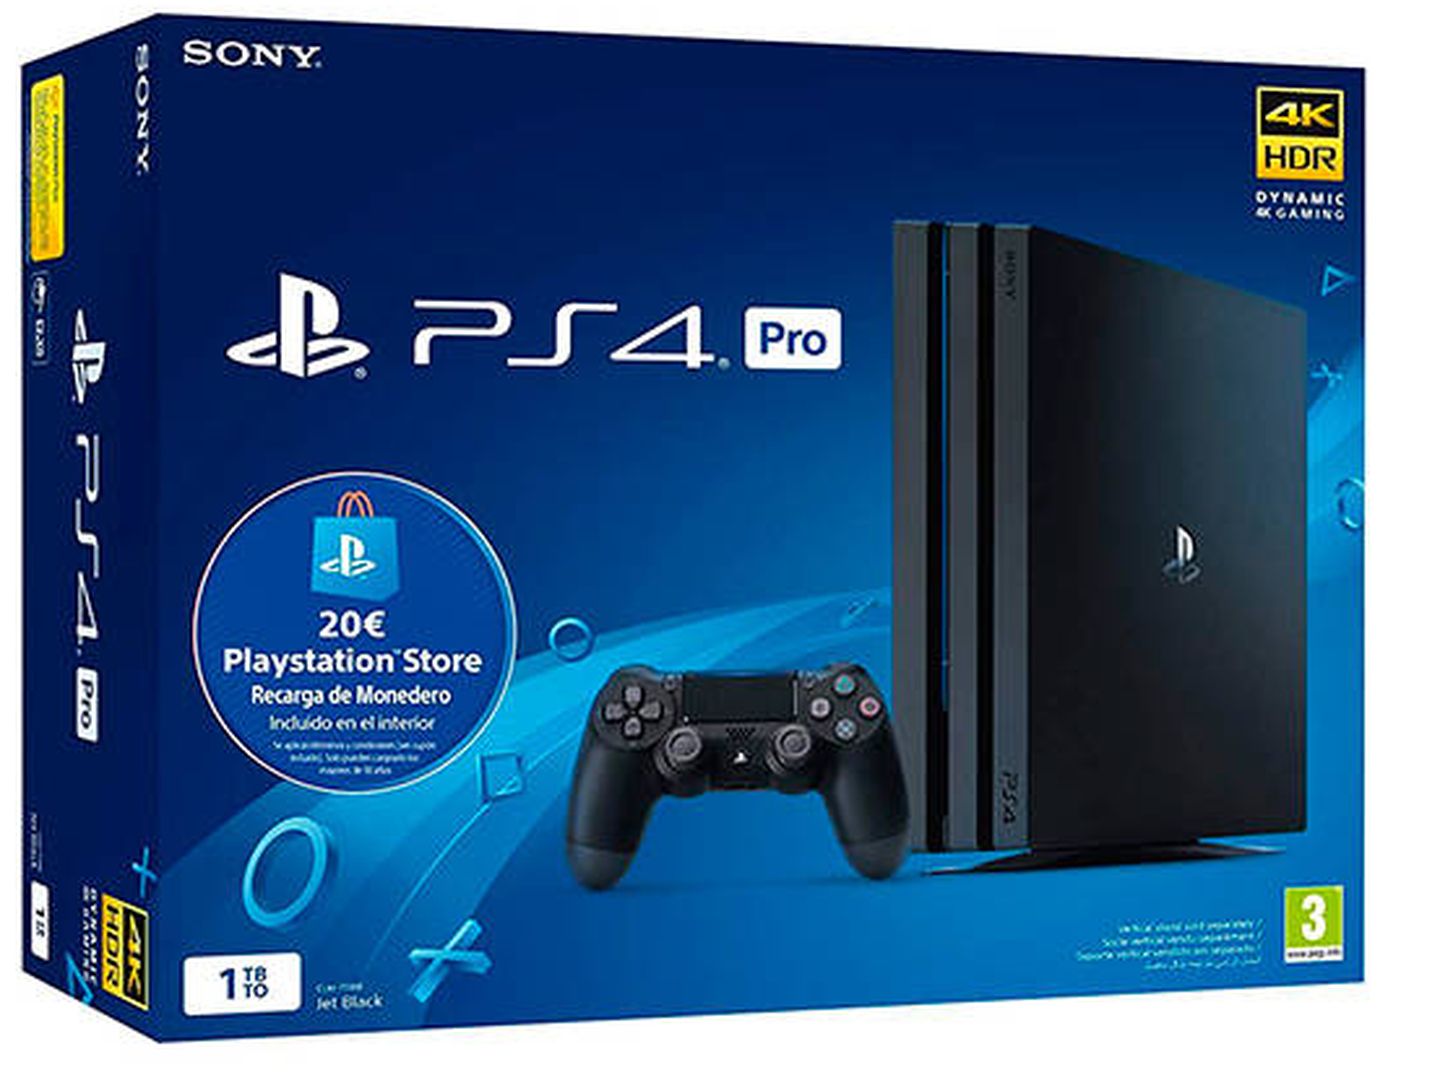 Sony Playstation 4 Pro (PS4) Consola de 1TB   20 euros Tarjeta Prepago (Edición Exclusiva Amazon) - nuevo chasis G